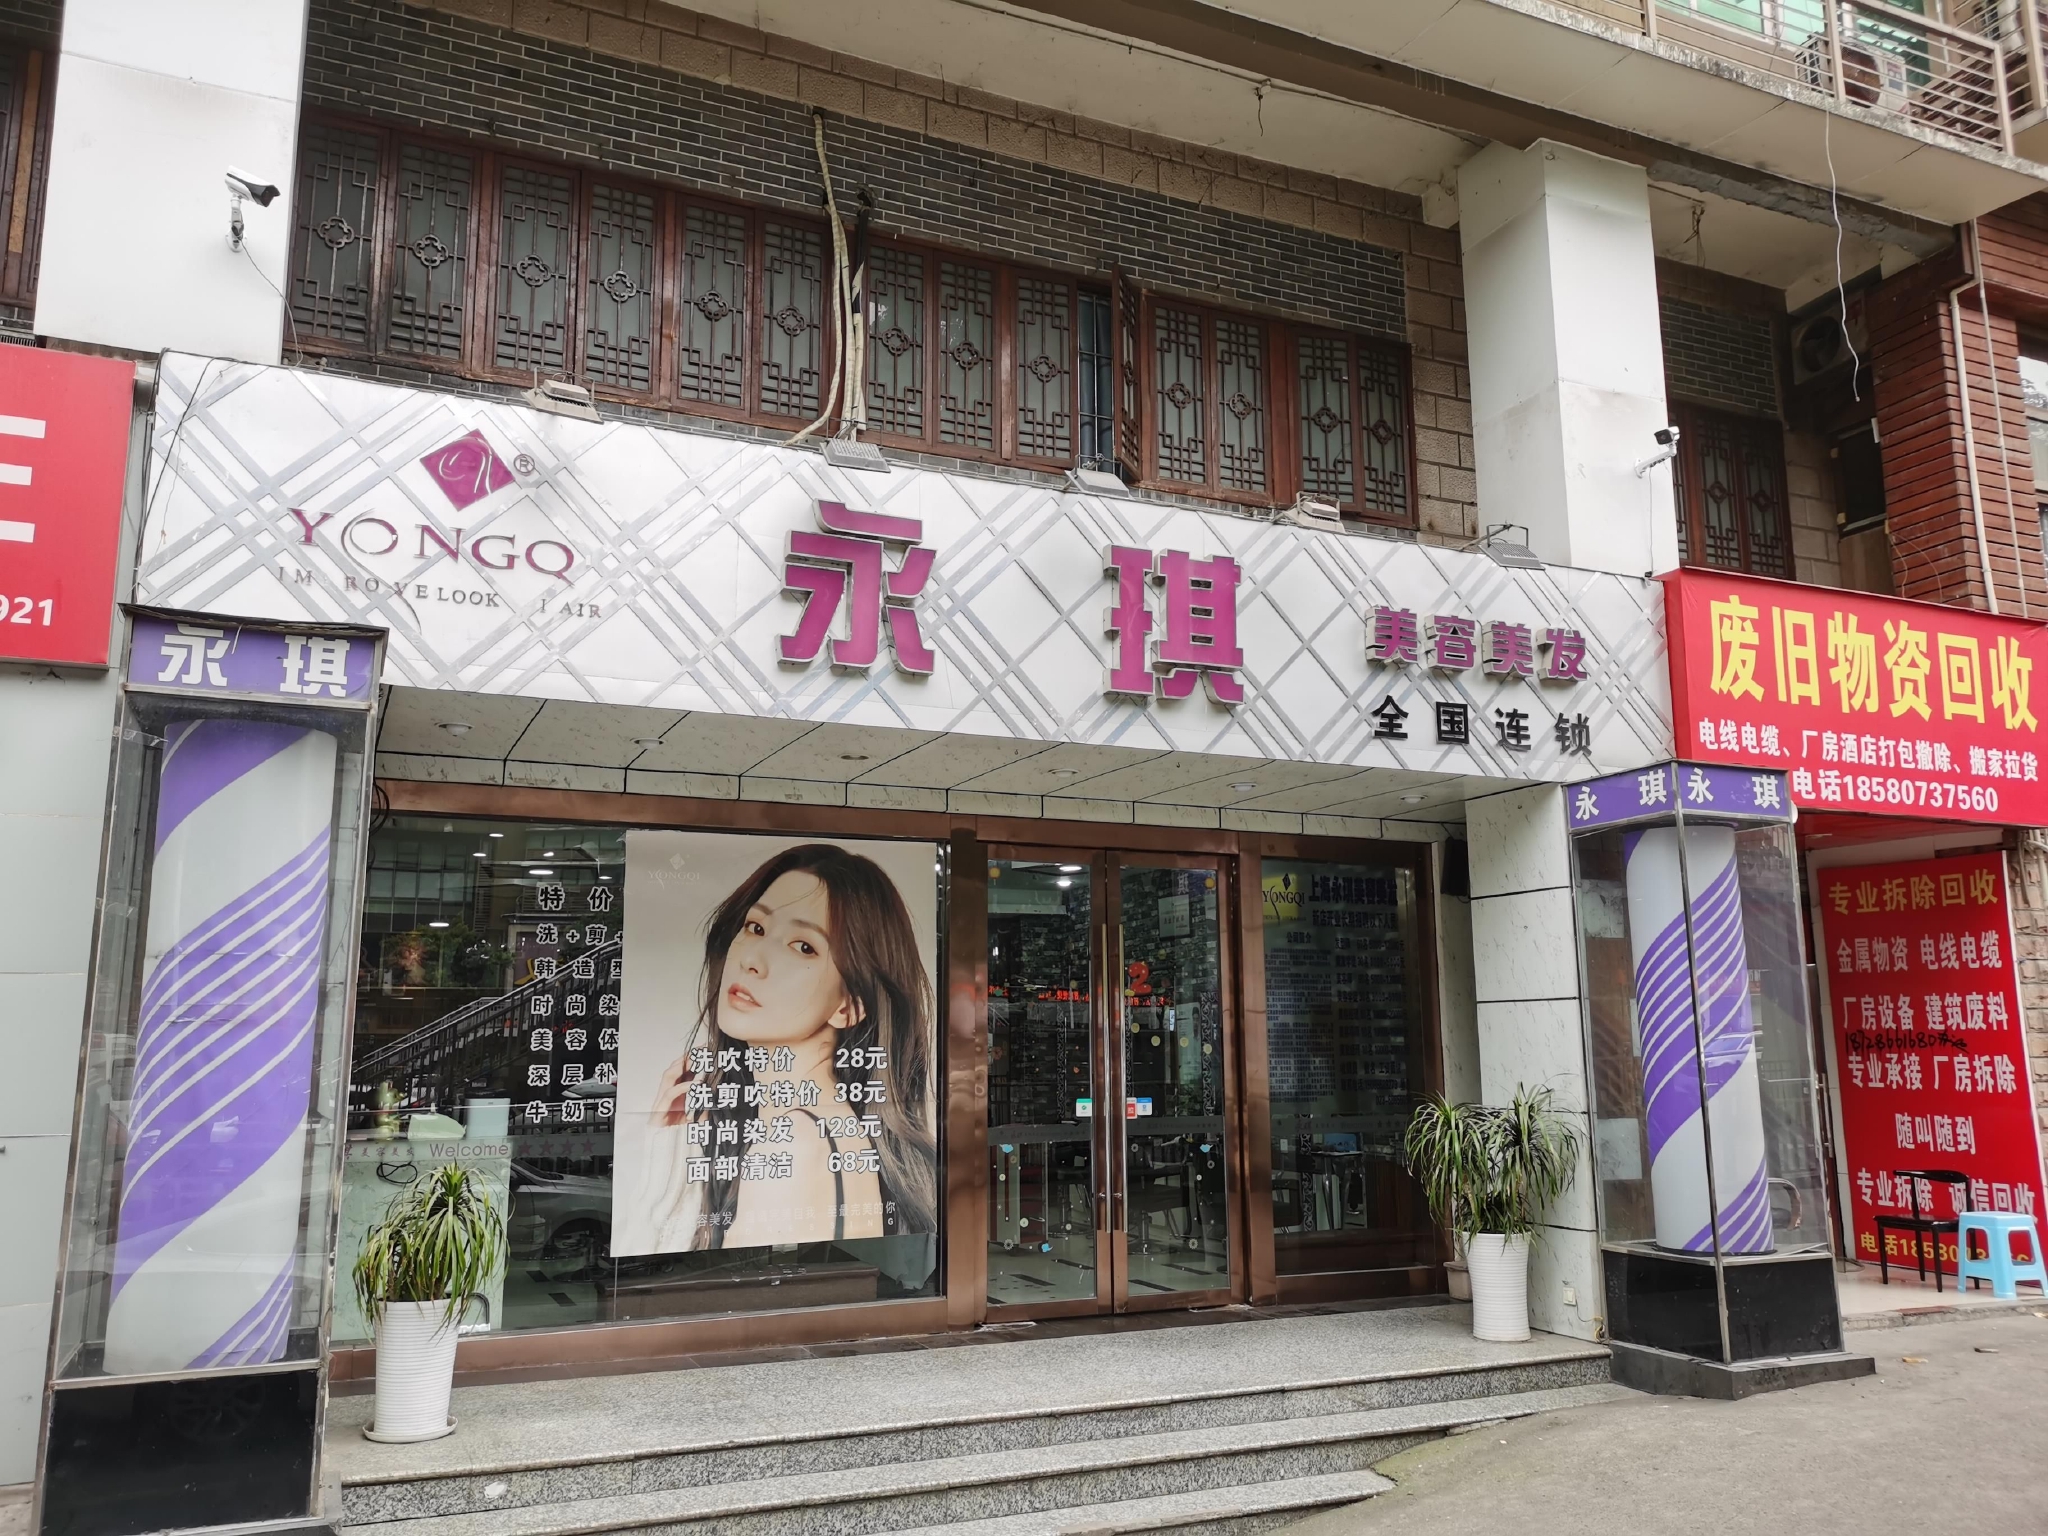 是香港疲肤生物科技有限公司,但公章名称却是永琪(上海)美容美发连锁